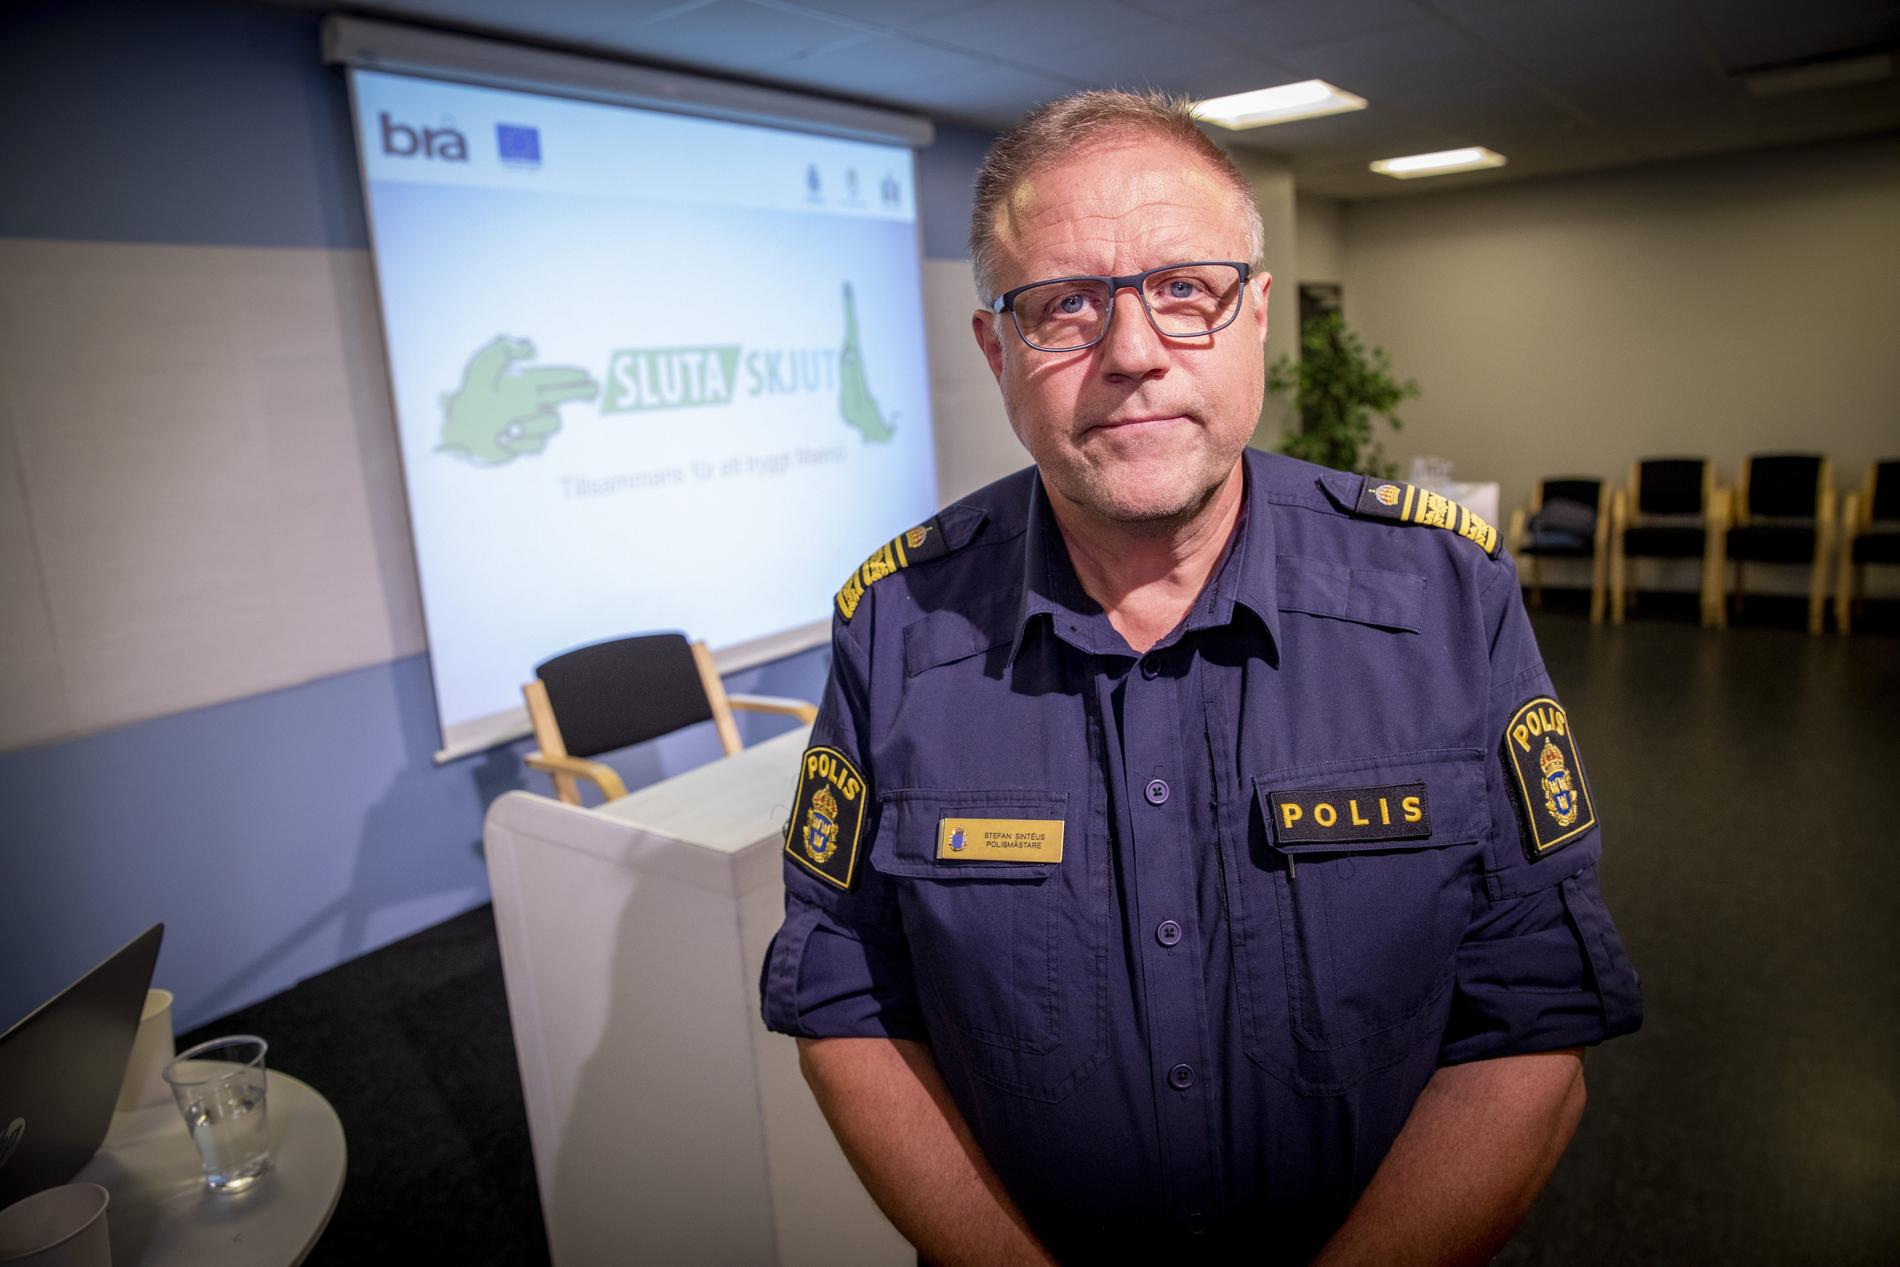 Stefan Sintéus, polisområdeschef i Malmö, under en presskonferens om projektet "Sluta skjut" 2018.